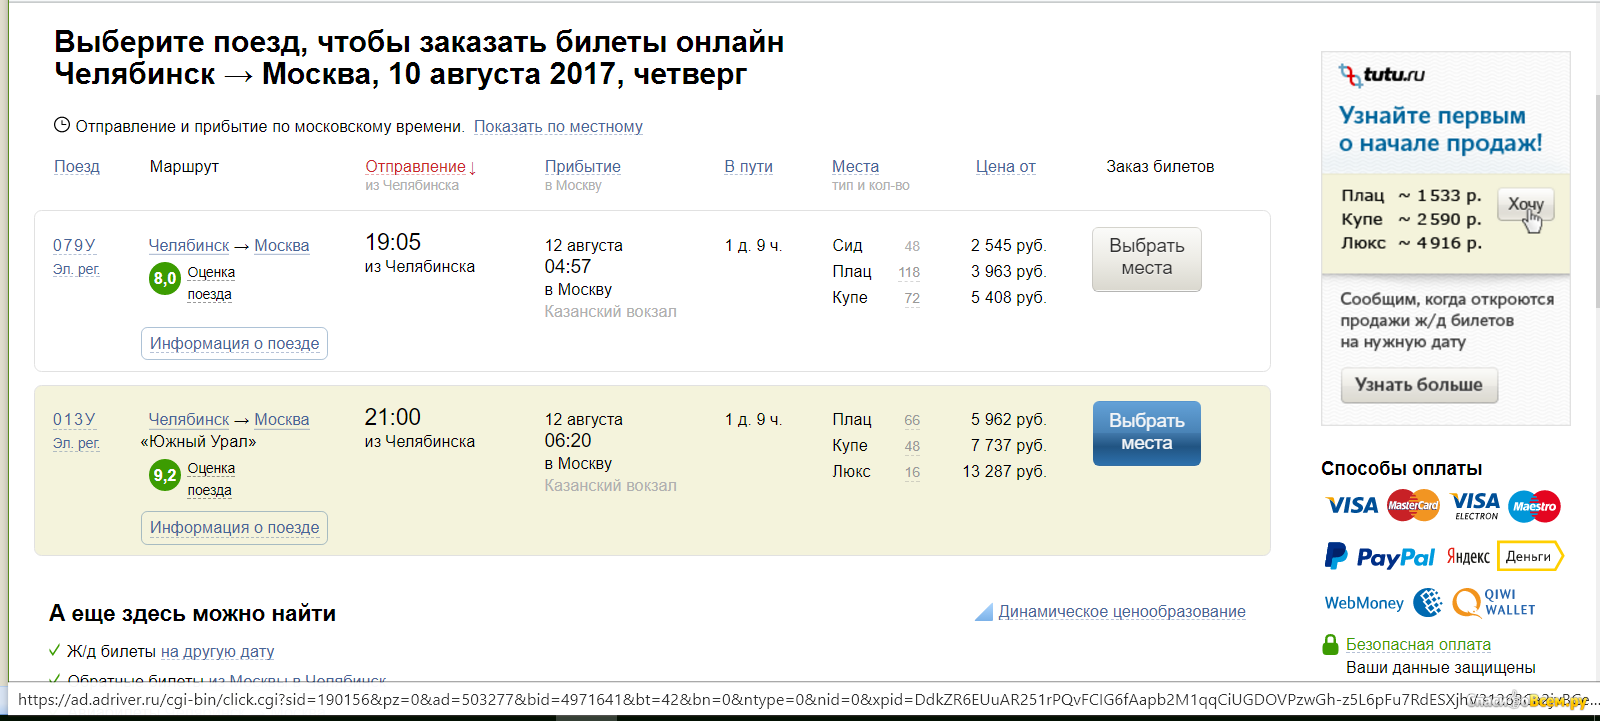 Сайт заказов билетов на поезд. Билет на поезд. Билет на поезд Челябинск Москва. Билет до Челябинска. Туту.